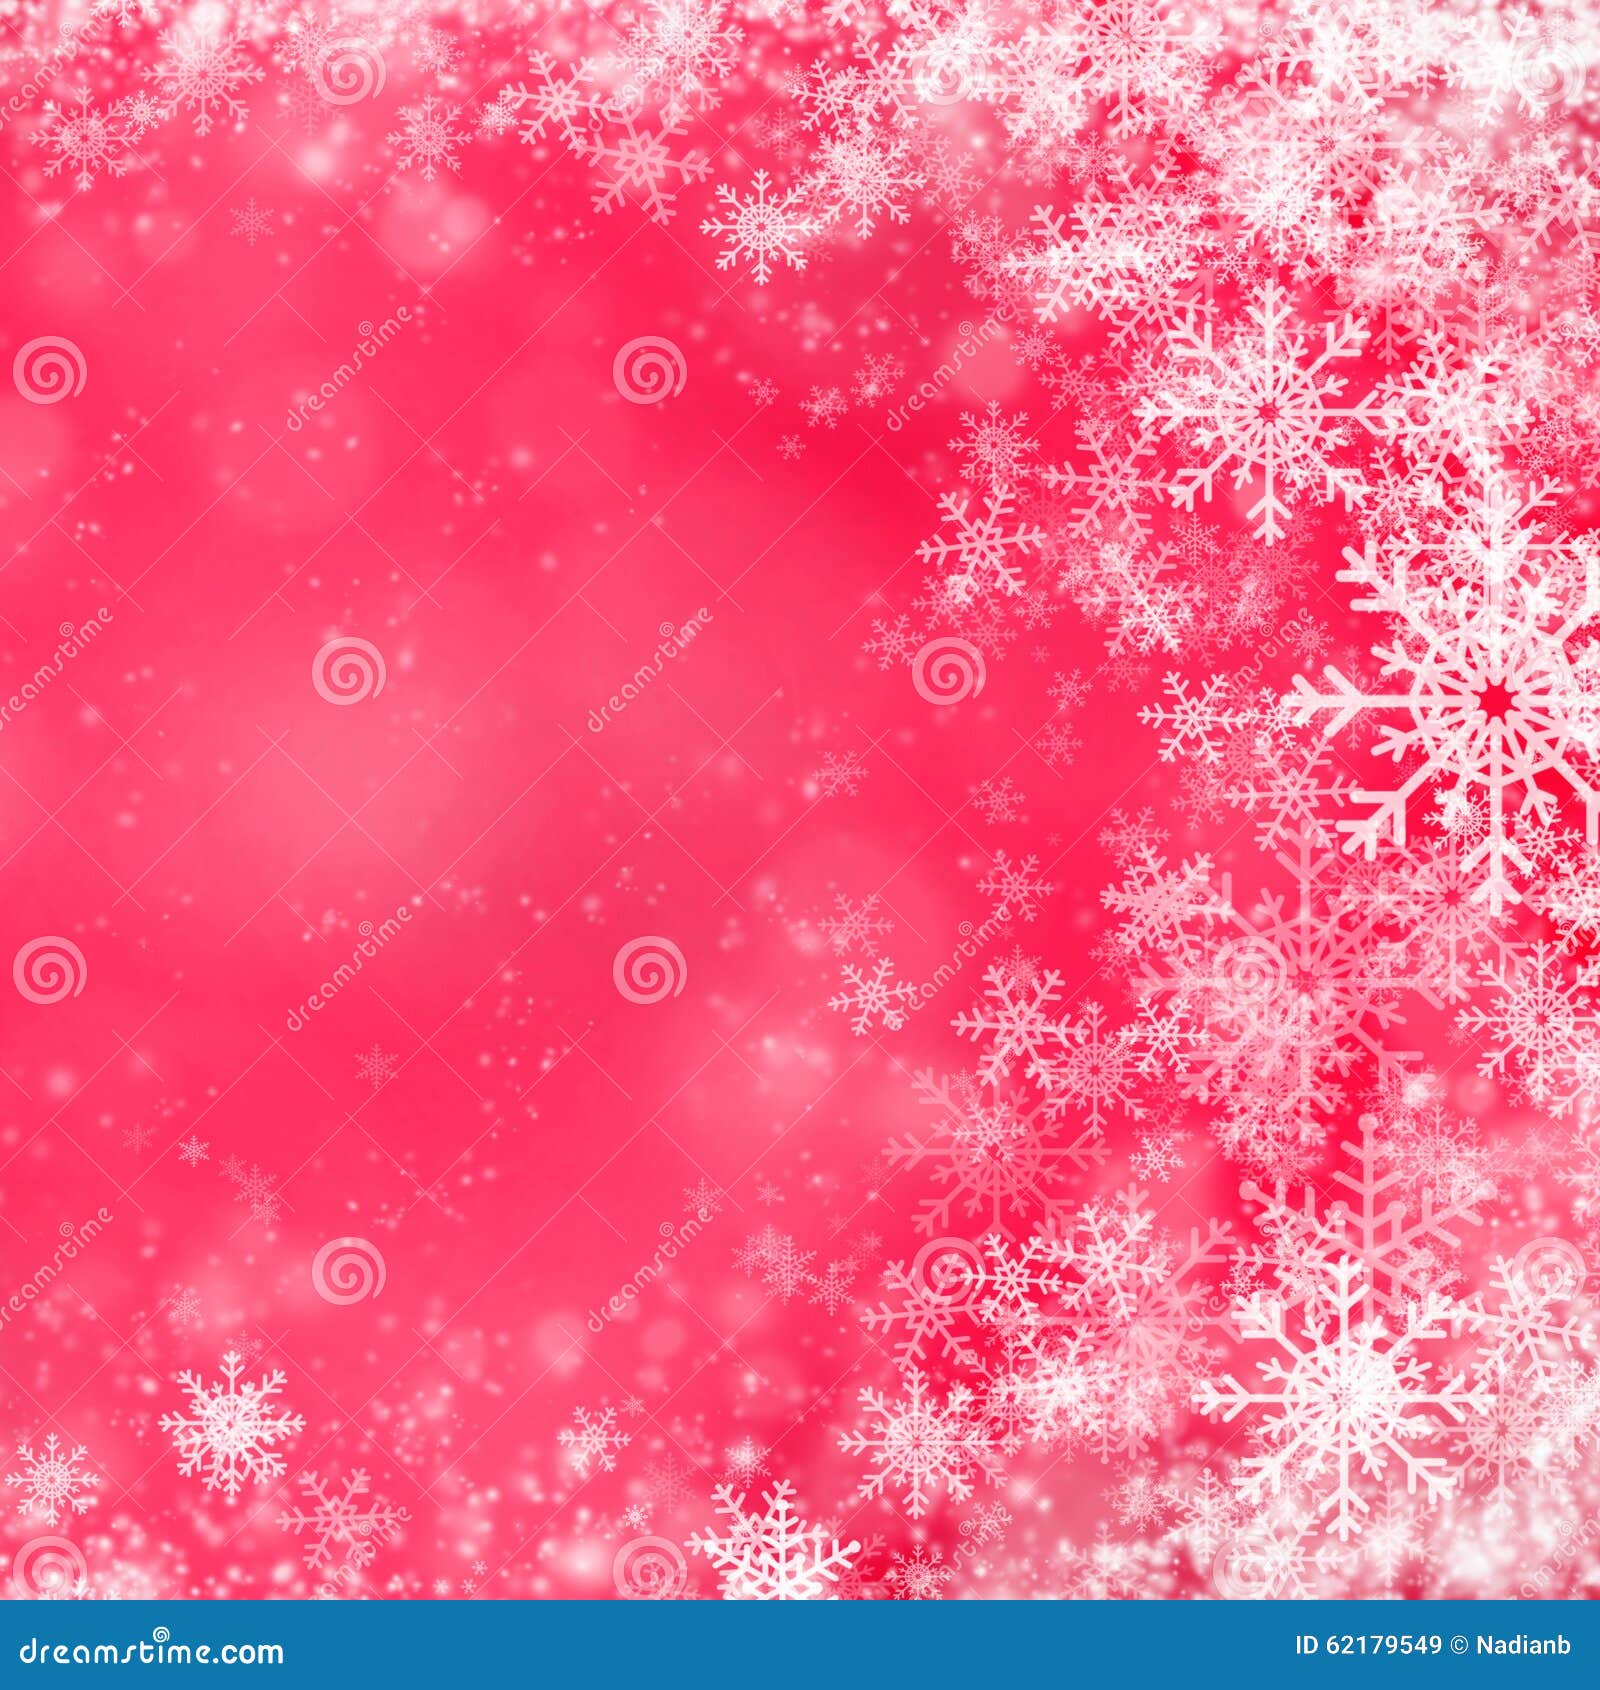 Rode Kerstmisachtergrond Met Sneeuwvlokken Stock Illustratie ...